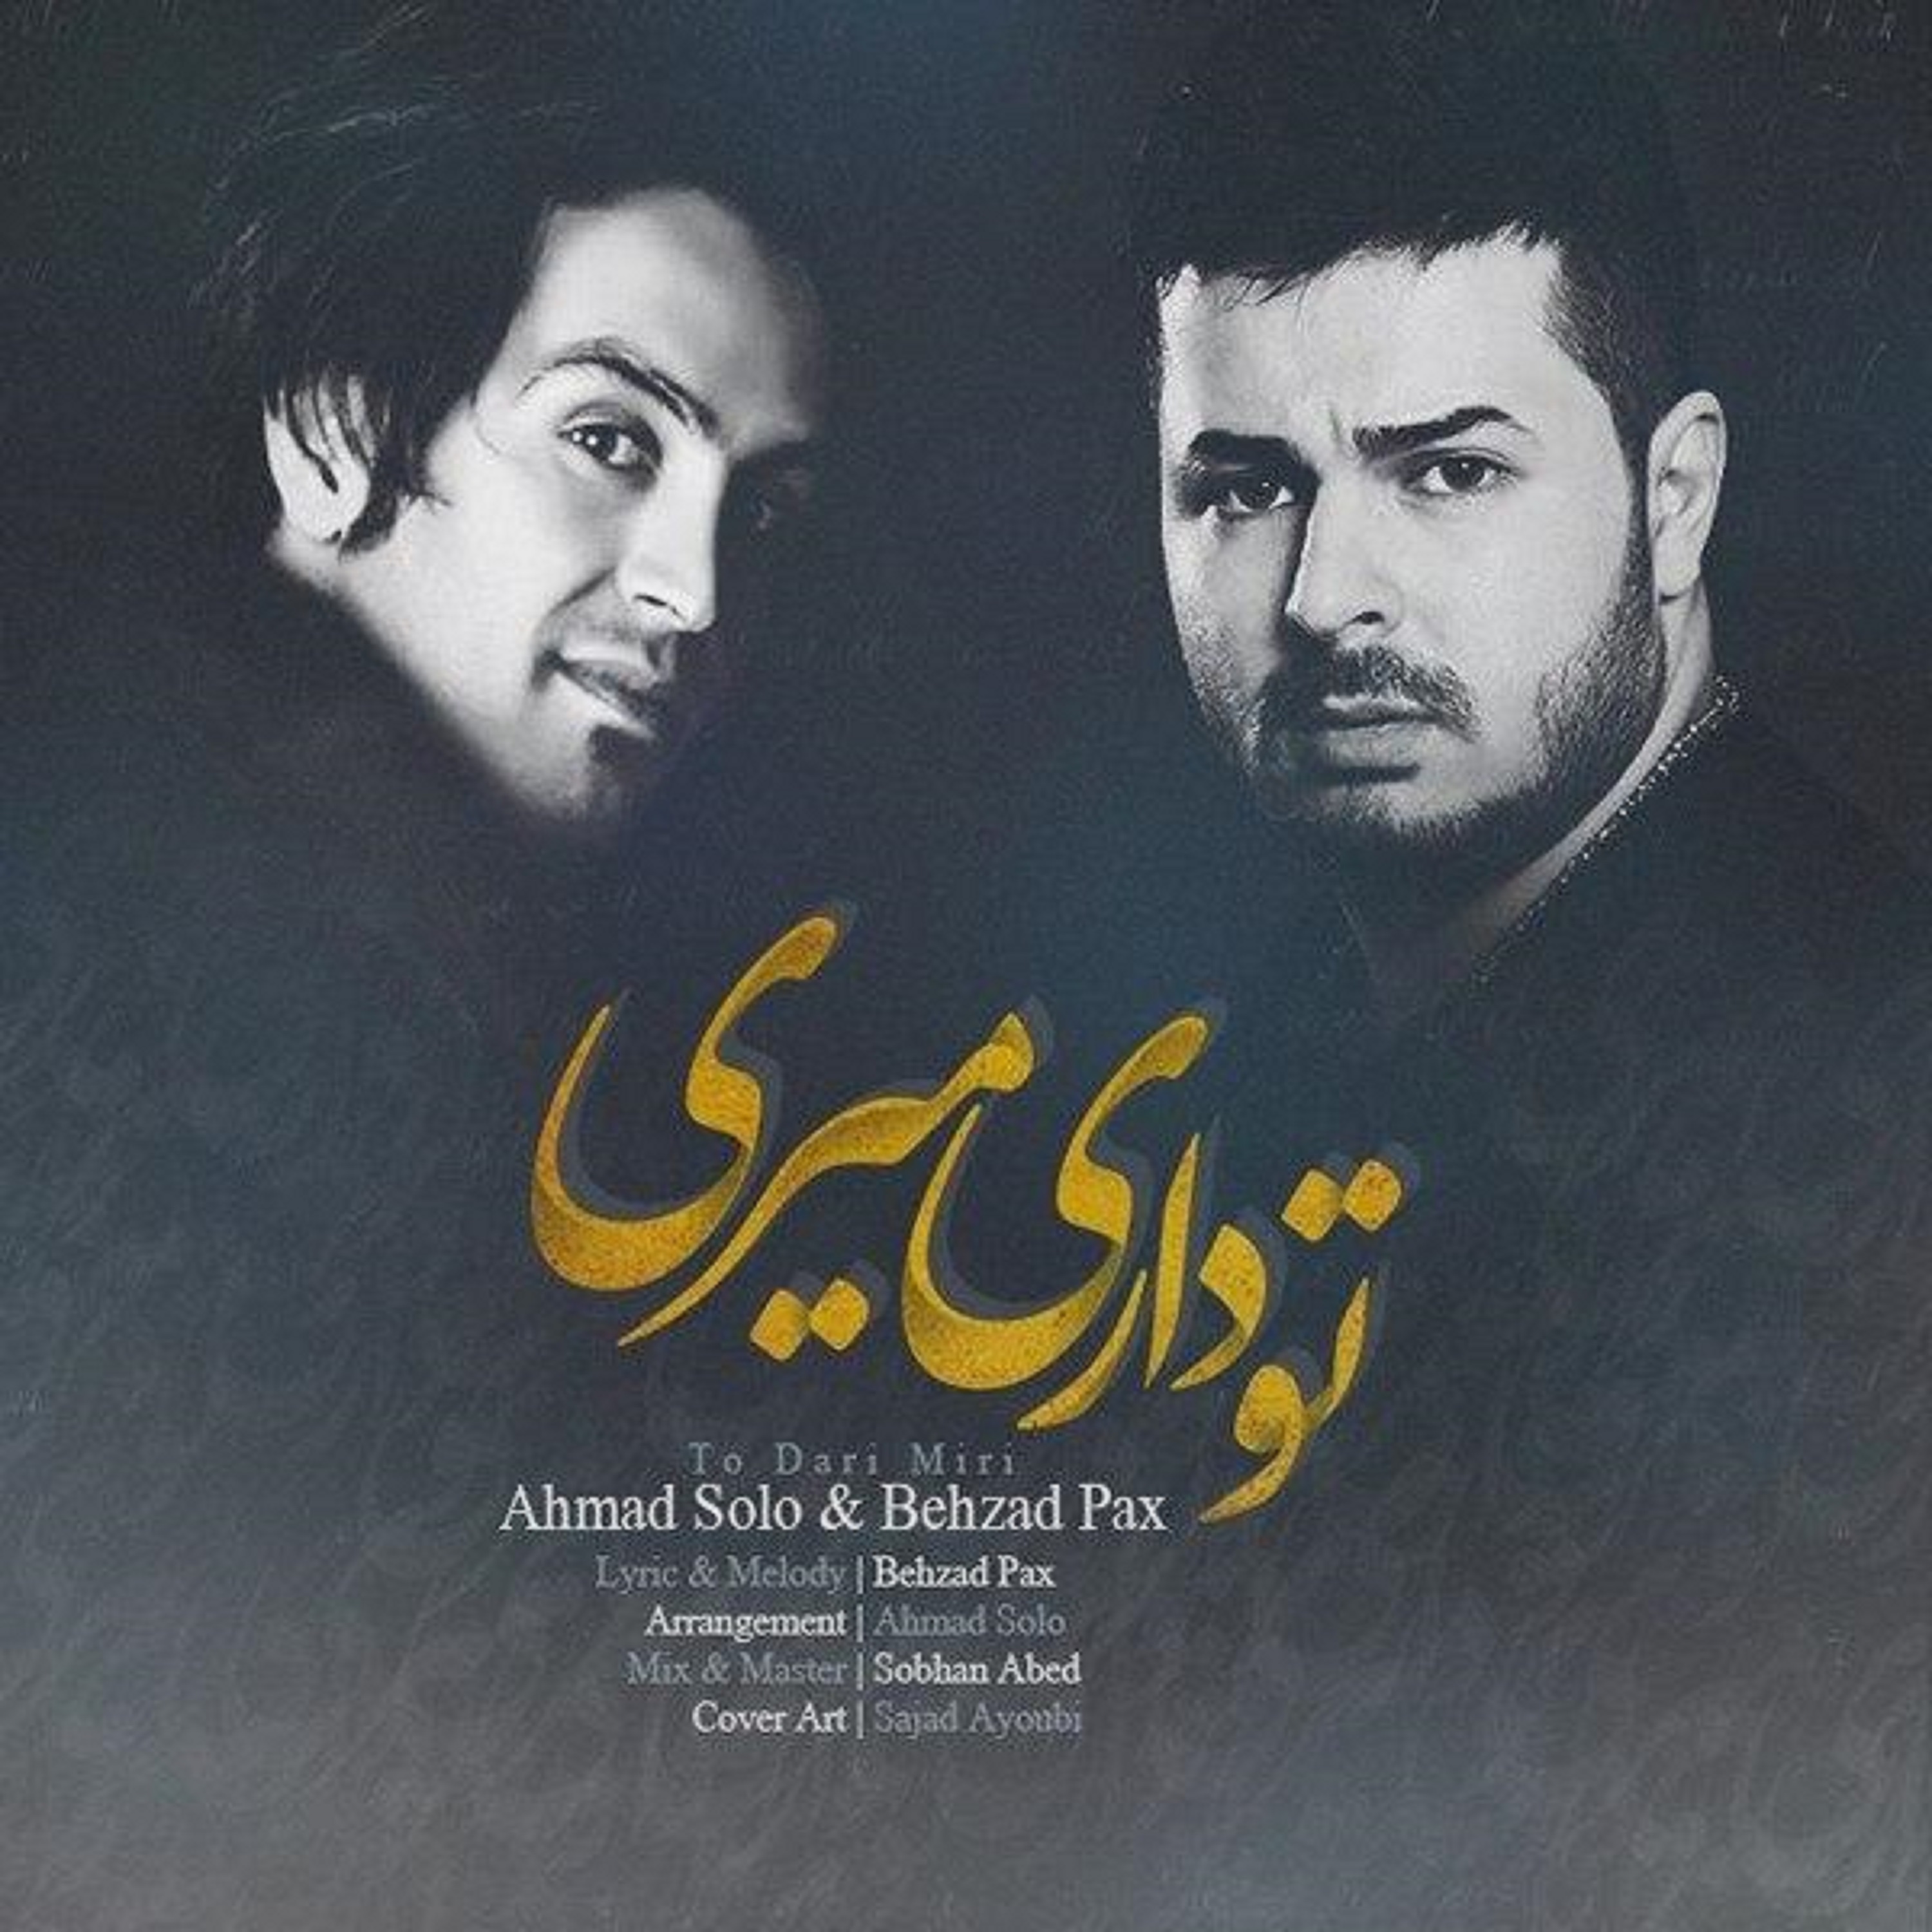  دانلود آهنگ جدید احمد سلو - تو داری میری | Download New Music By Ahmad Solo - To Dari Miri (feat. Behzad Pax)